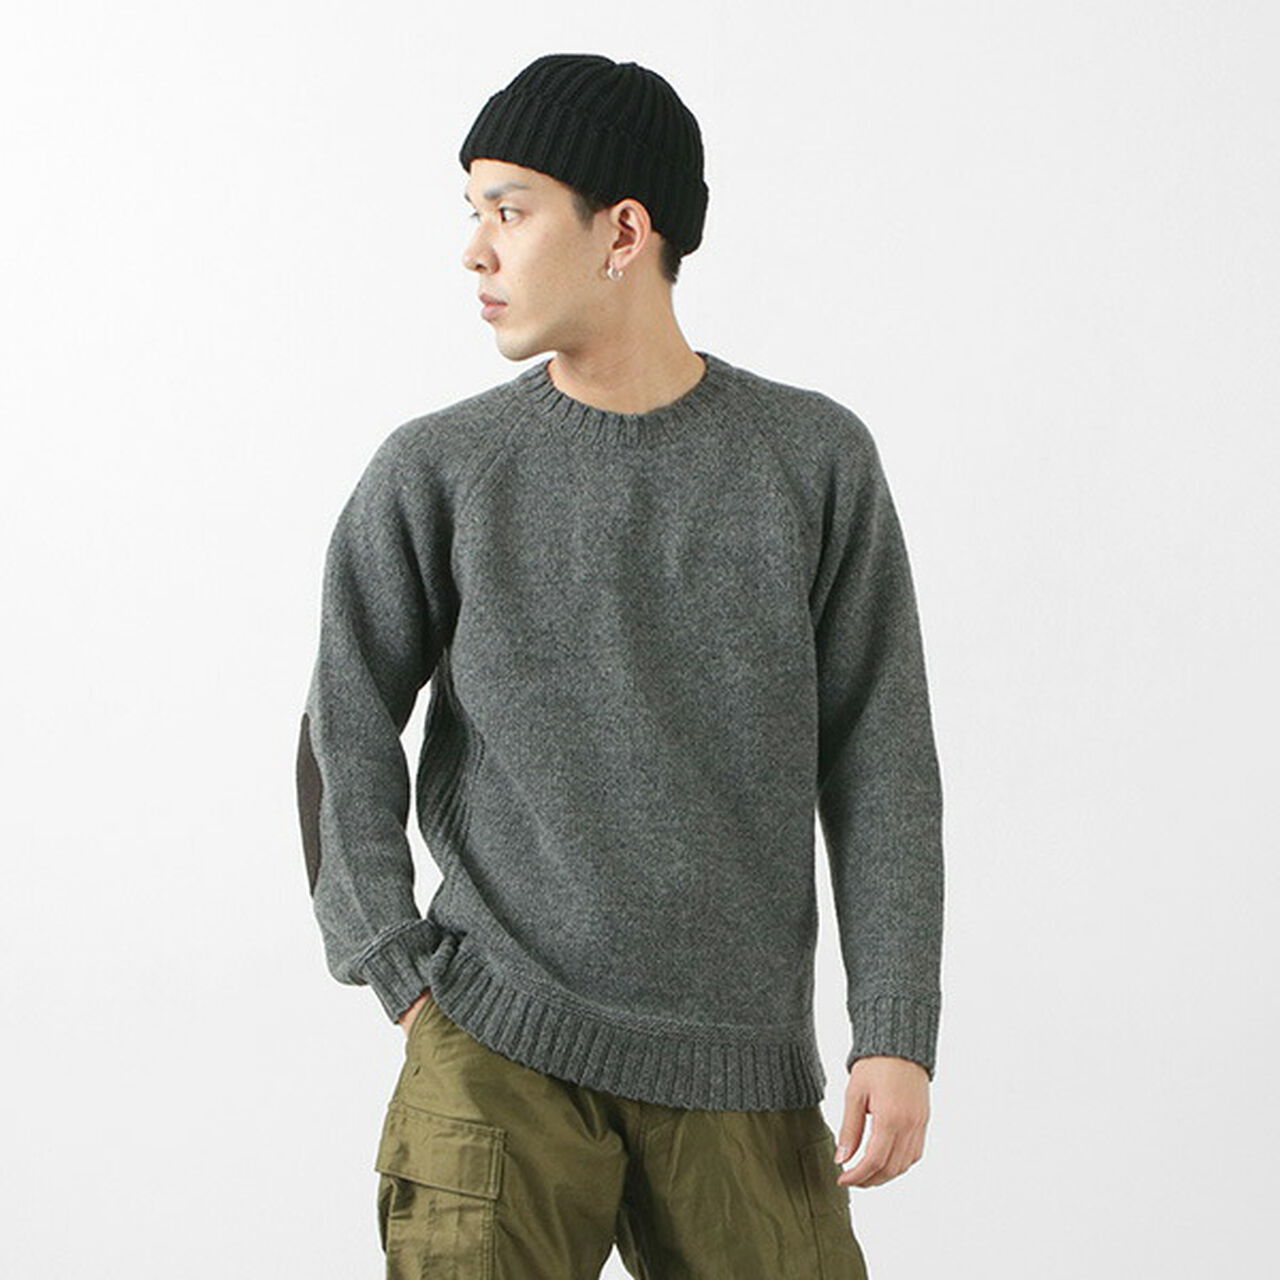 LANDNOAH  British Wool Crewneck Sweater,Grey, large image number 0